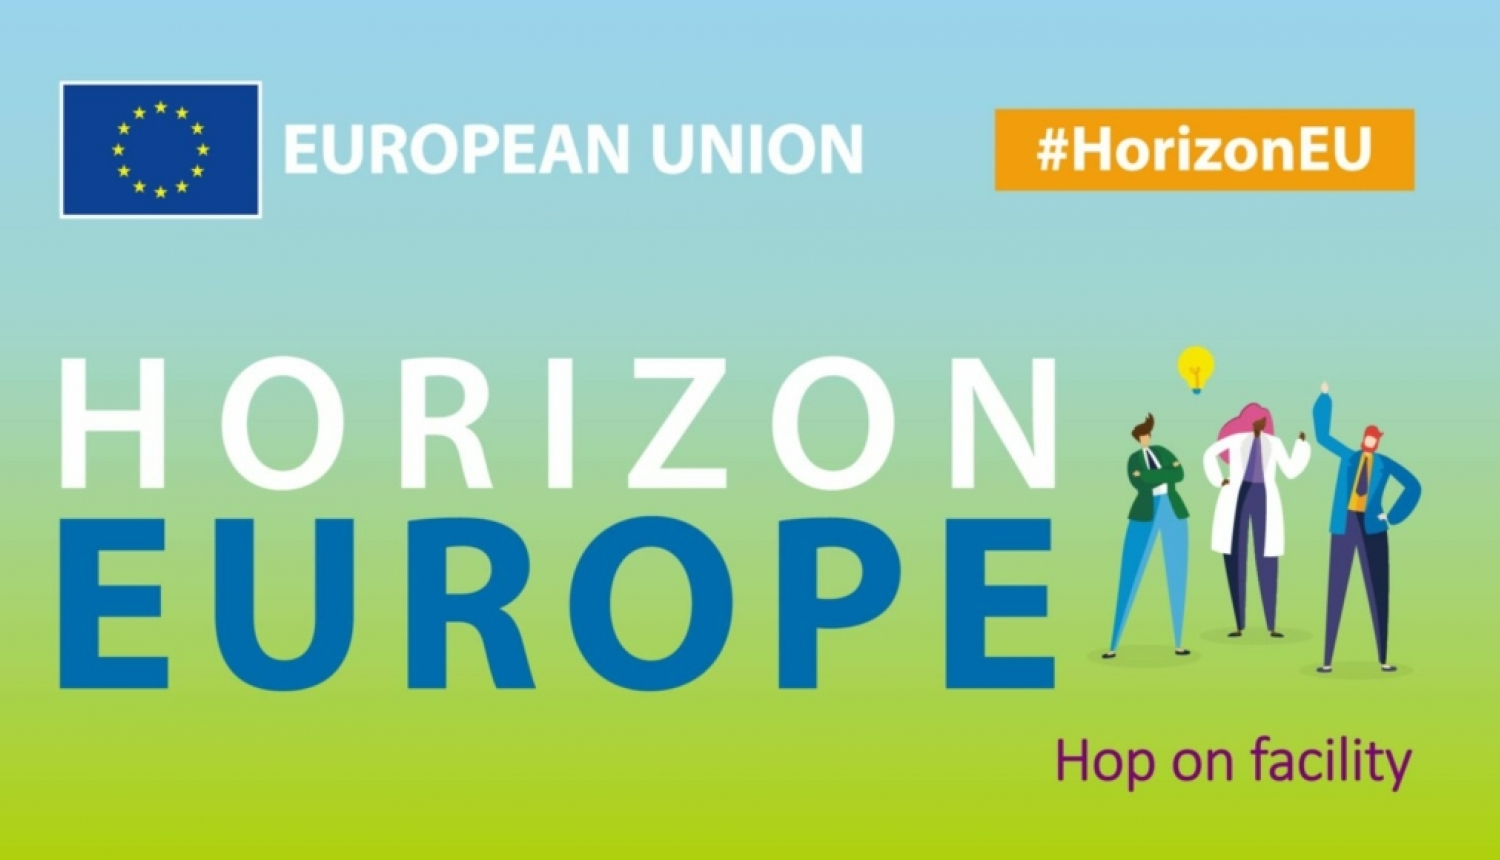 Apvārsnis Eiropa ievieš jaunu atbalsta mehānismu “Hop-On Facility” jeb pievienošanās konsorcijiem iespēju